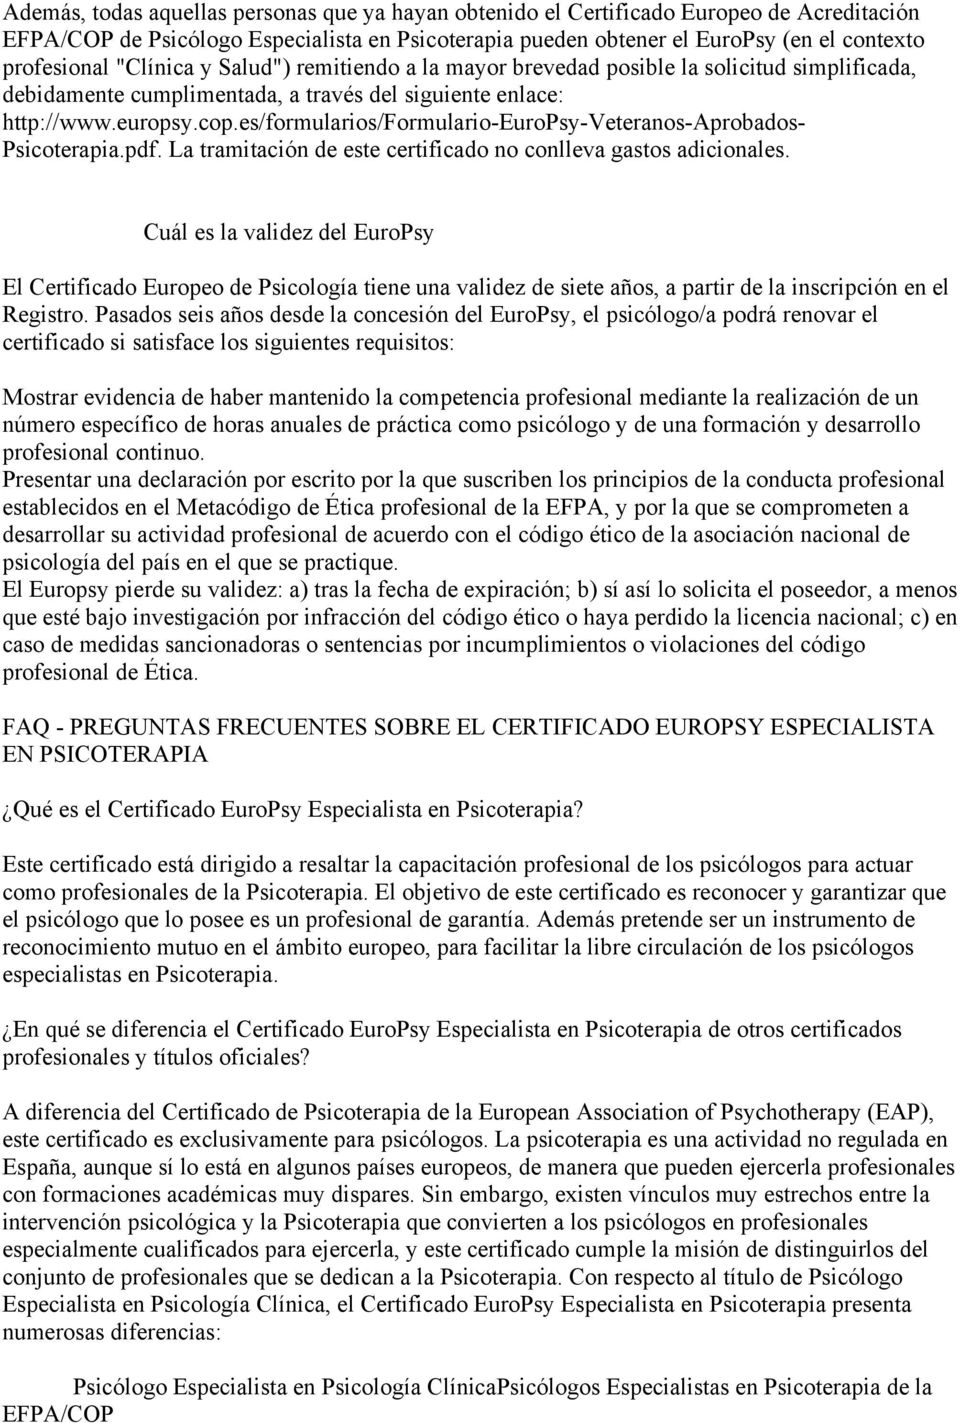 es/formularios/formulario-europsy-veteranos-aprobados- Psicoterapia.pdf. La tramitación de este certificado no conlleva gastos adicionales.